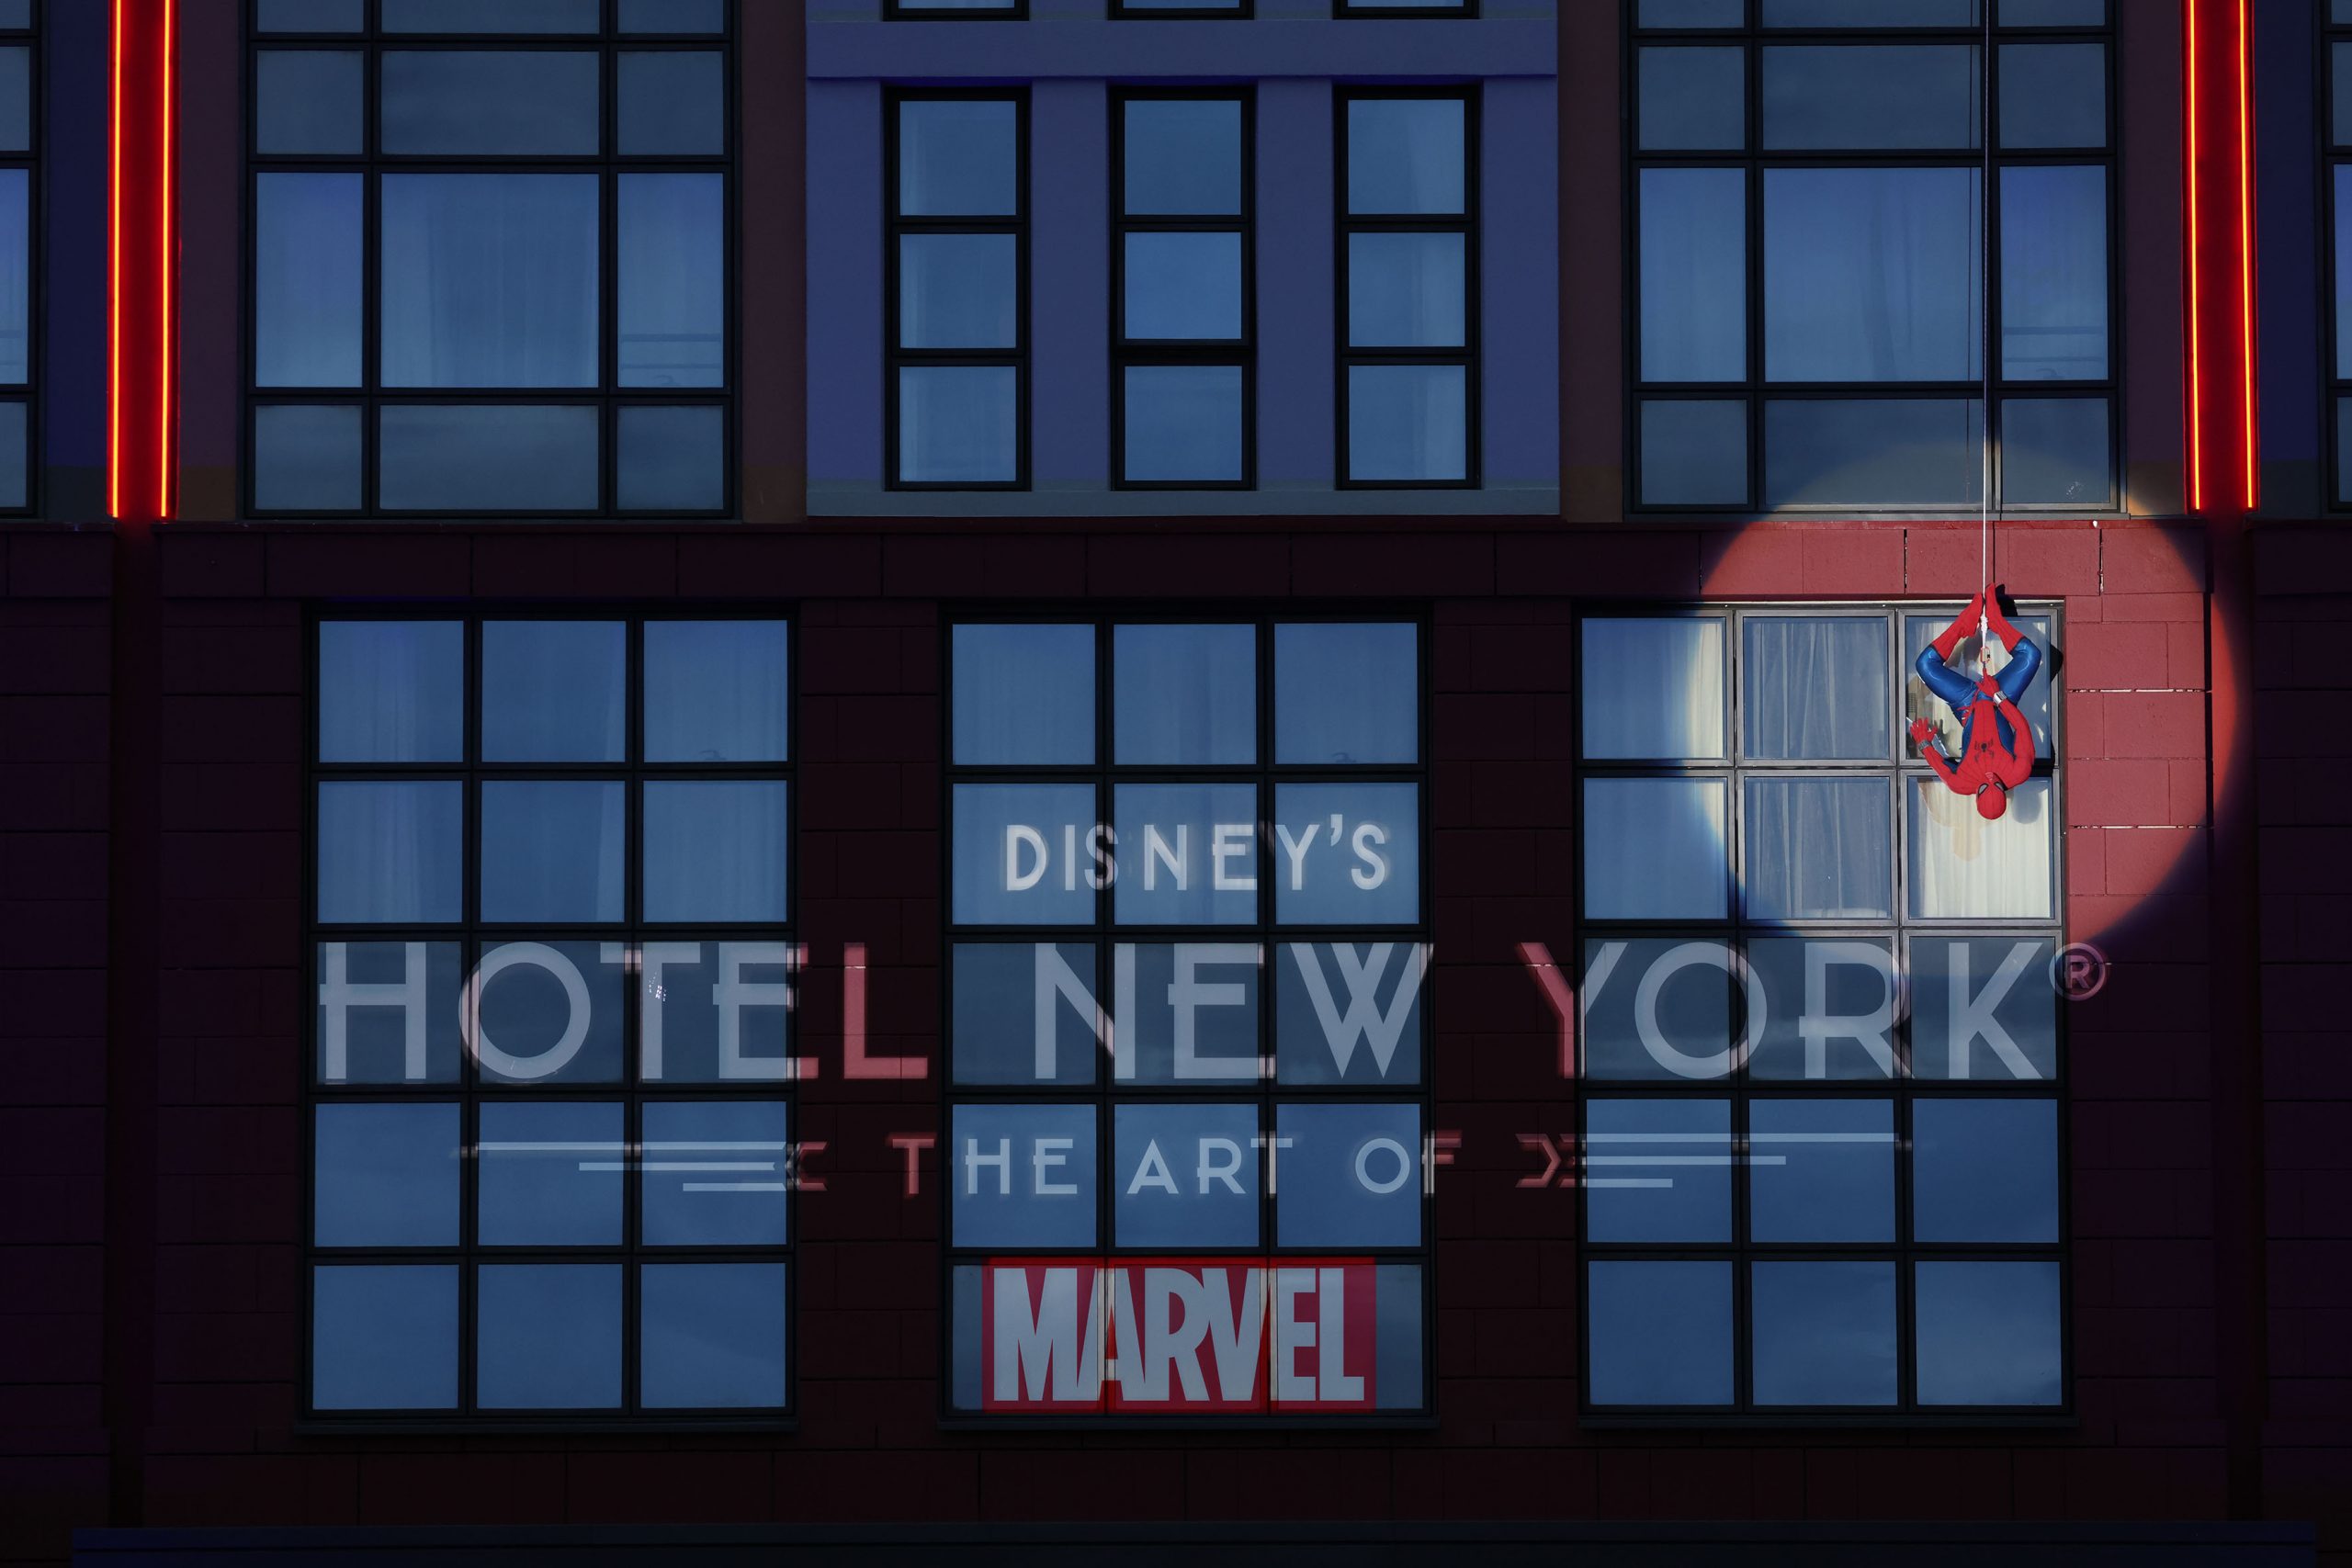 Disneyland Paris inaugure le premier hôtel au monde dédié à l’art MARVEL : Disney’s Hotel New York – The Art of Marvel